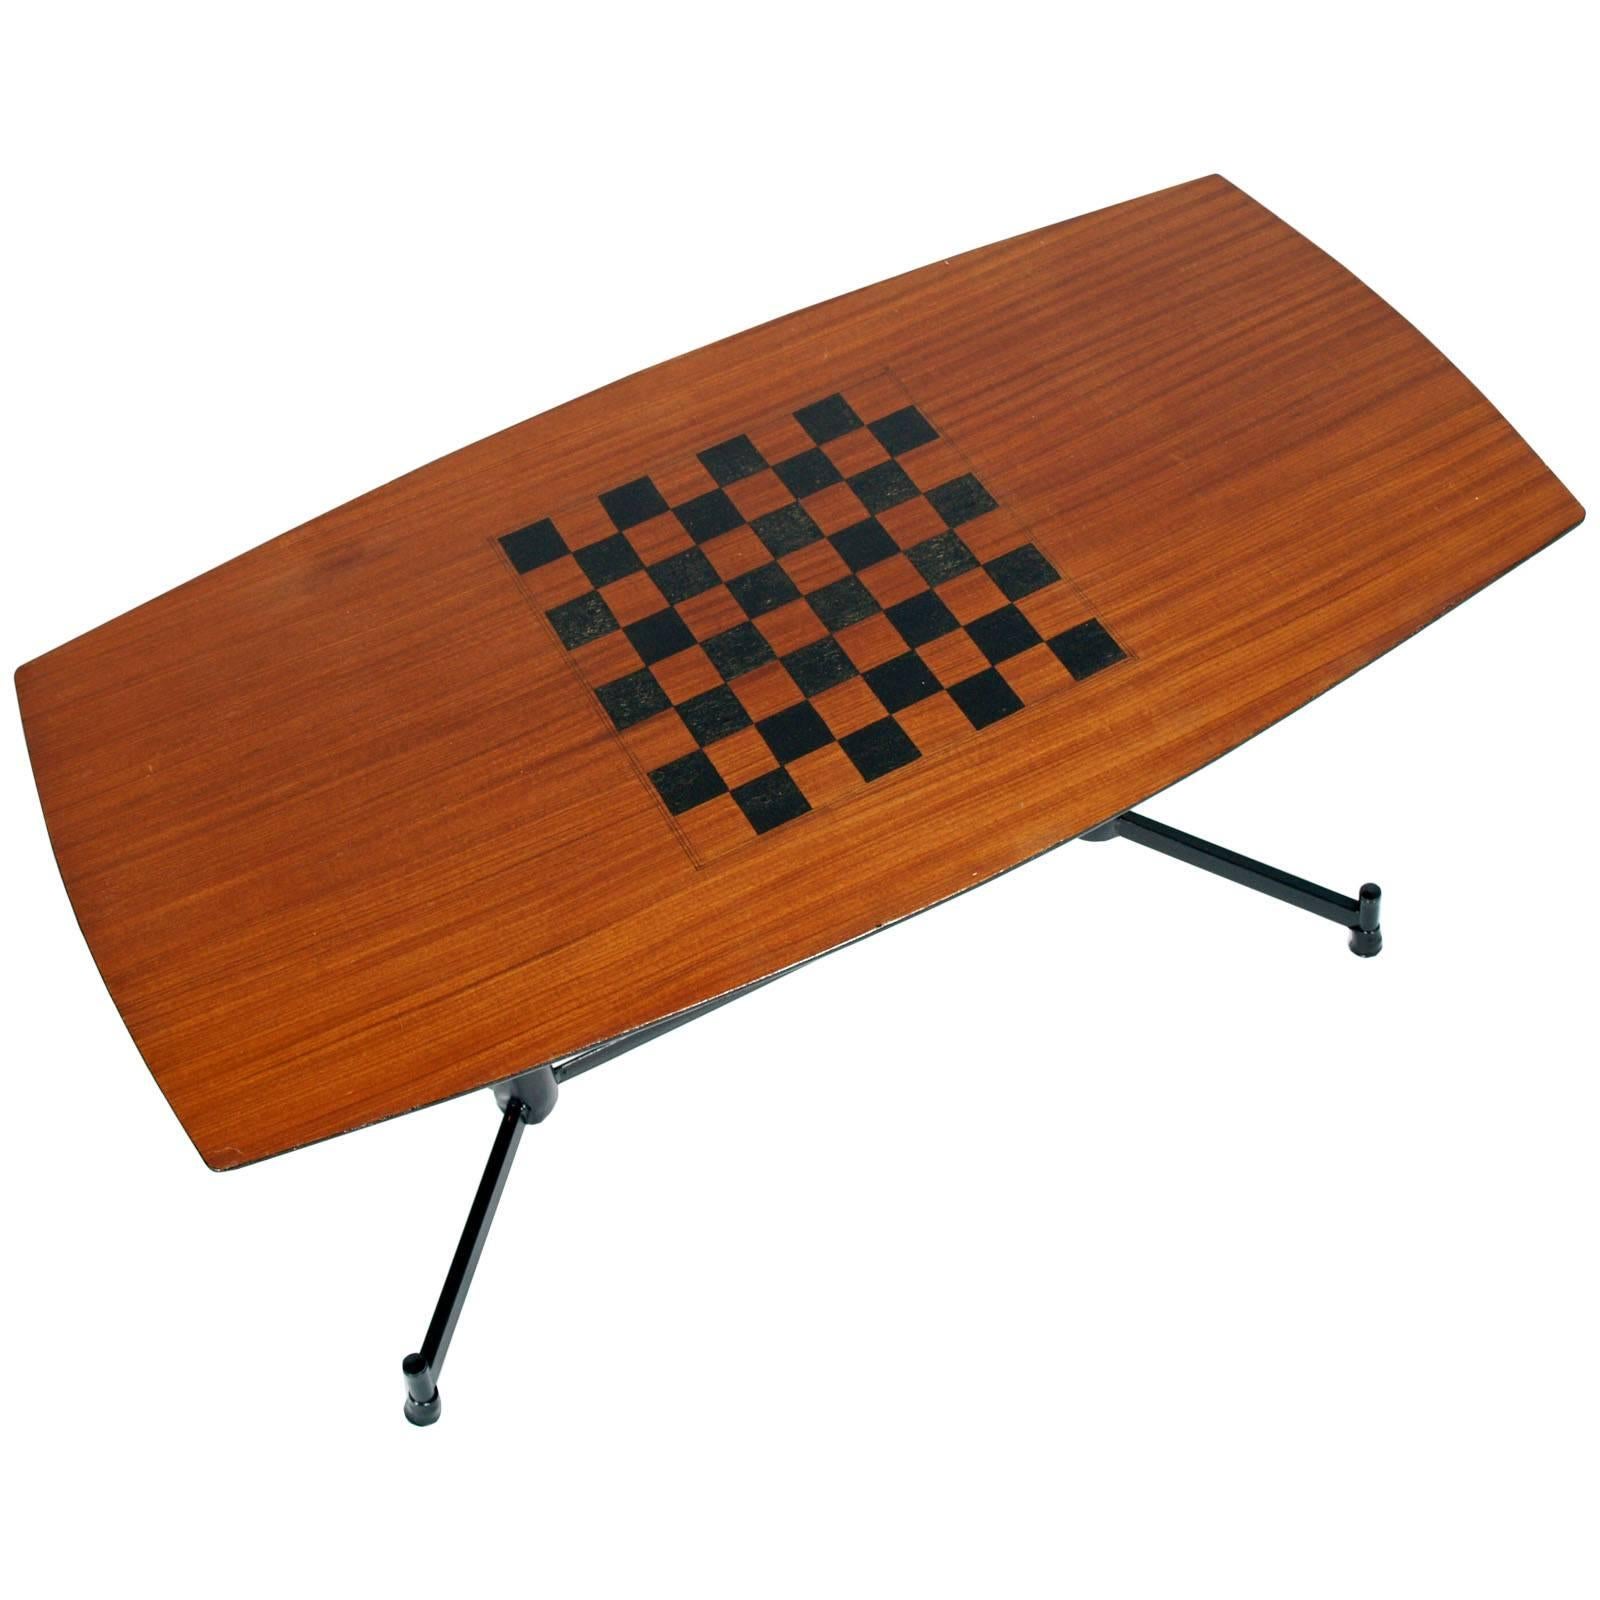 Moderner Spieltisch aus der Jahrhundertmitte, Osvaldo Borsani für Tecno zugeschrieben, furniertes Mahagoni, dekoriert für das Schachspiel. Beine aus lackiertem Stahl mit verstellbaren Füßen. Gute Bedingungen.

Maße cm: H 40, B 78, T 40.